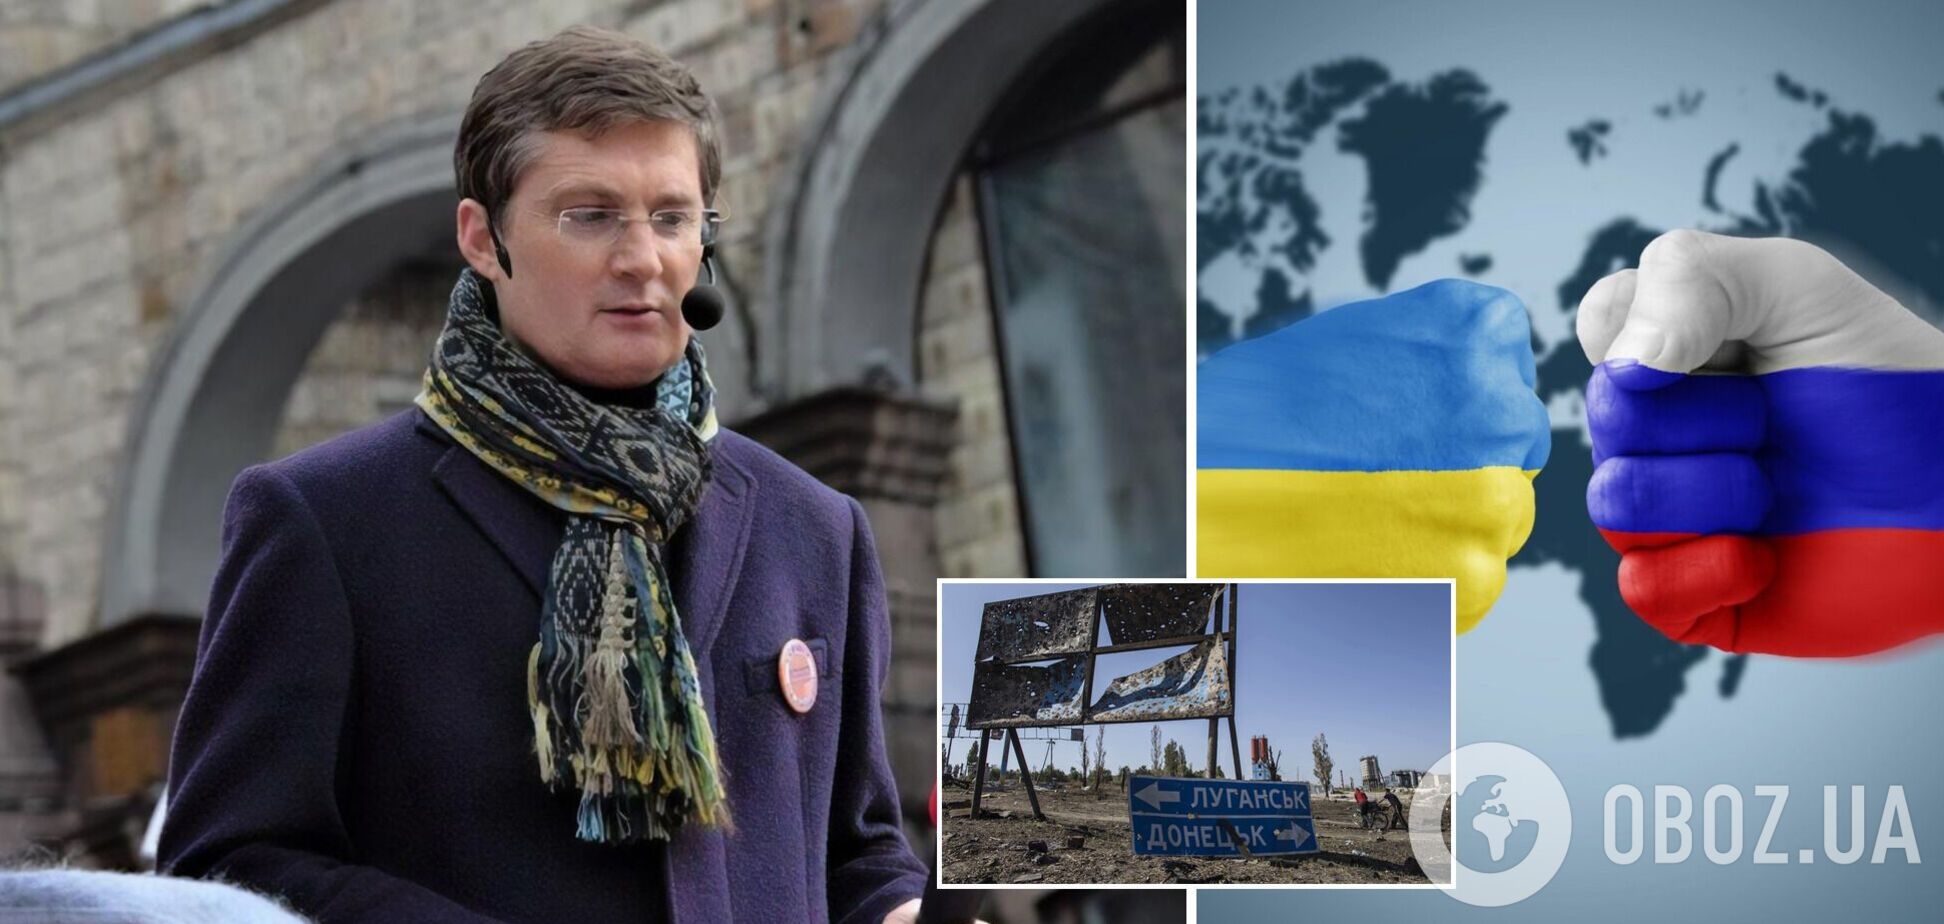 Кондратюк: народу РФ пофиг смерти украинцев, у них в голове – пропагандистская вавка 'Украина – не страна'